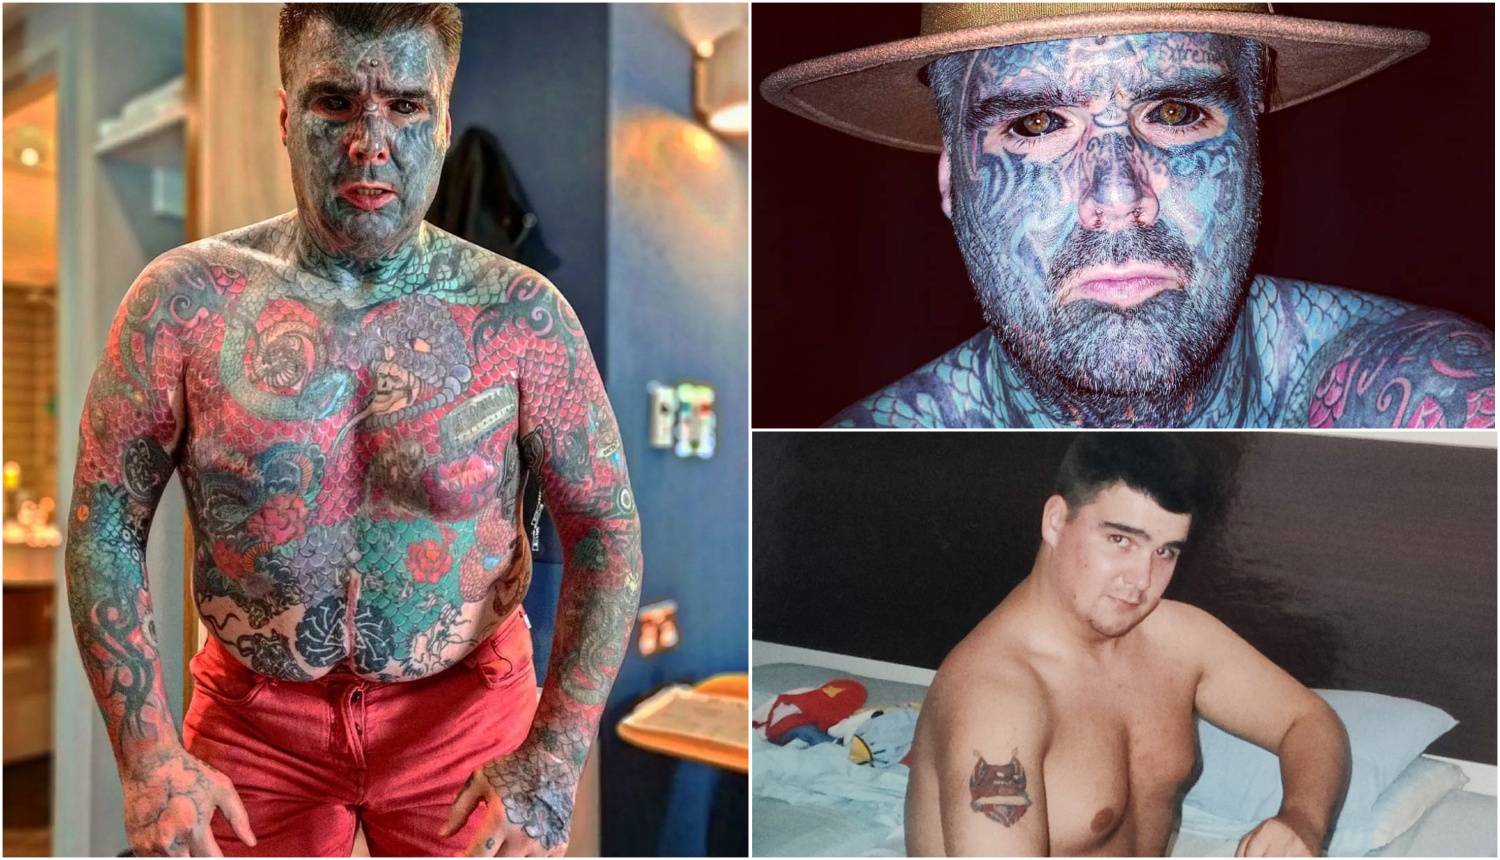 'Cijelo tijelo mi je tetovirano, ali sad moram pauzirati kako bih mogao otplatiti veliku hipoteku'